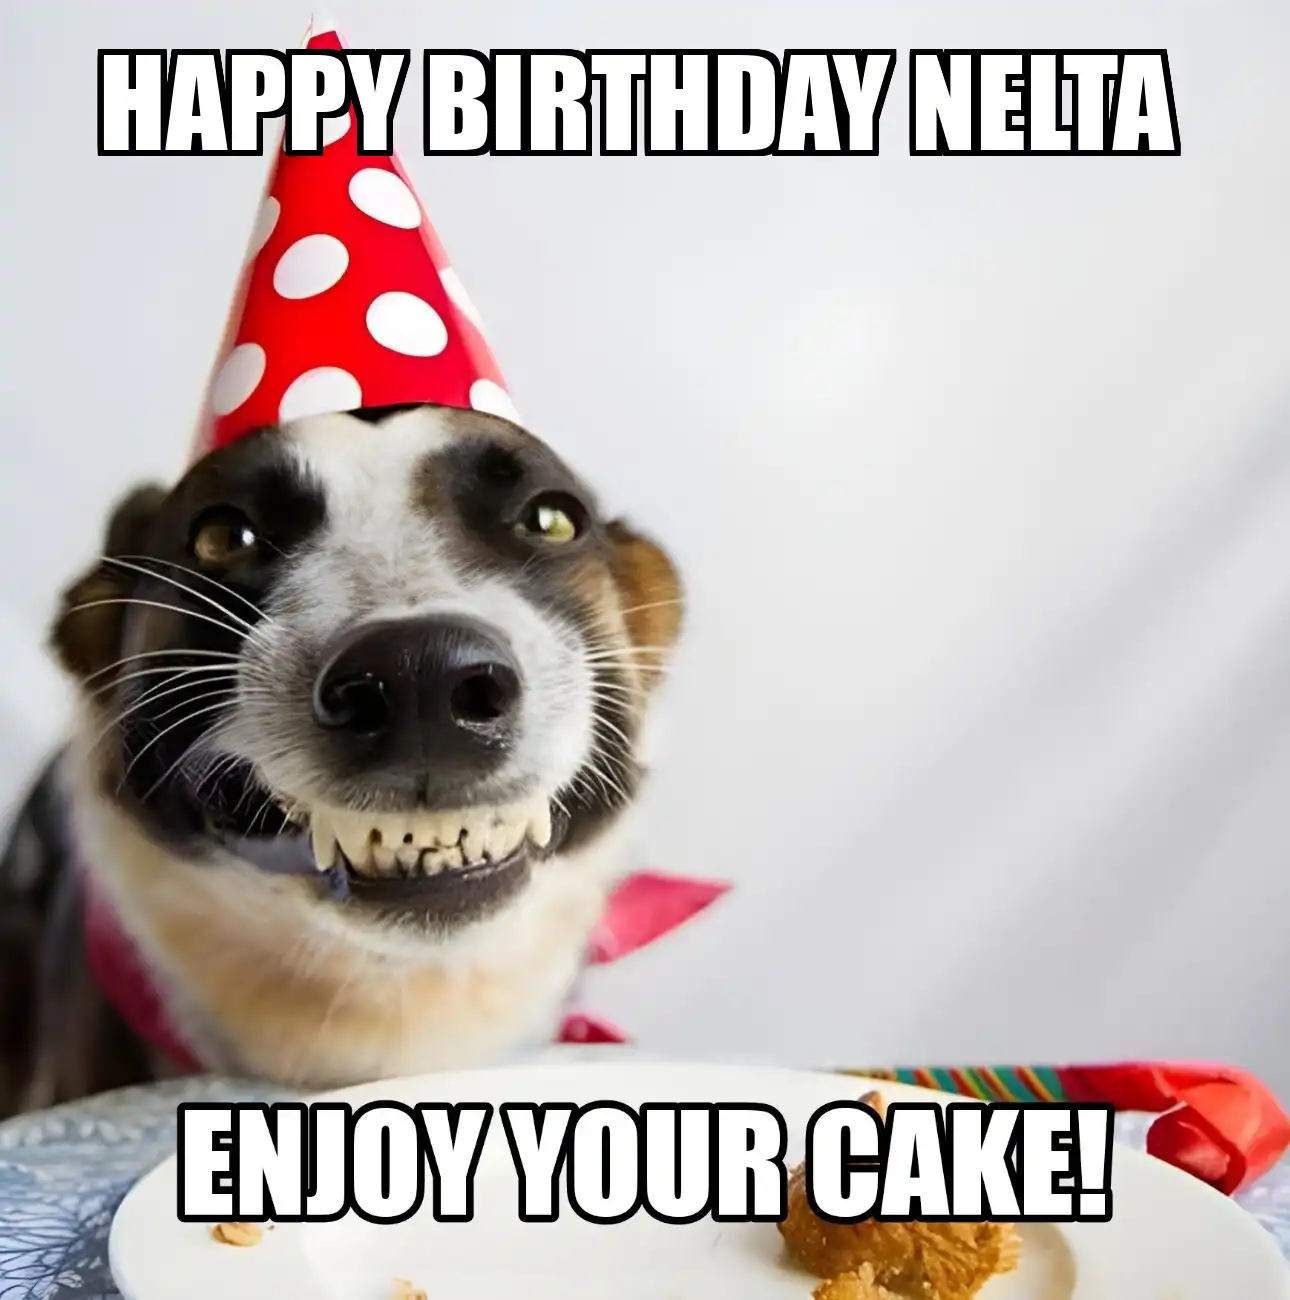 Happy Birthday Nelta Enjoy Your Cake Dog Meme